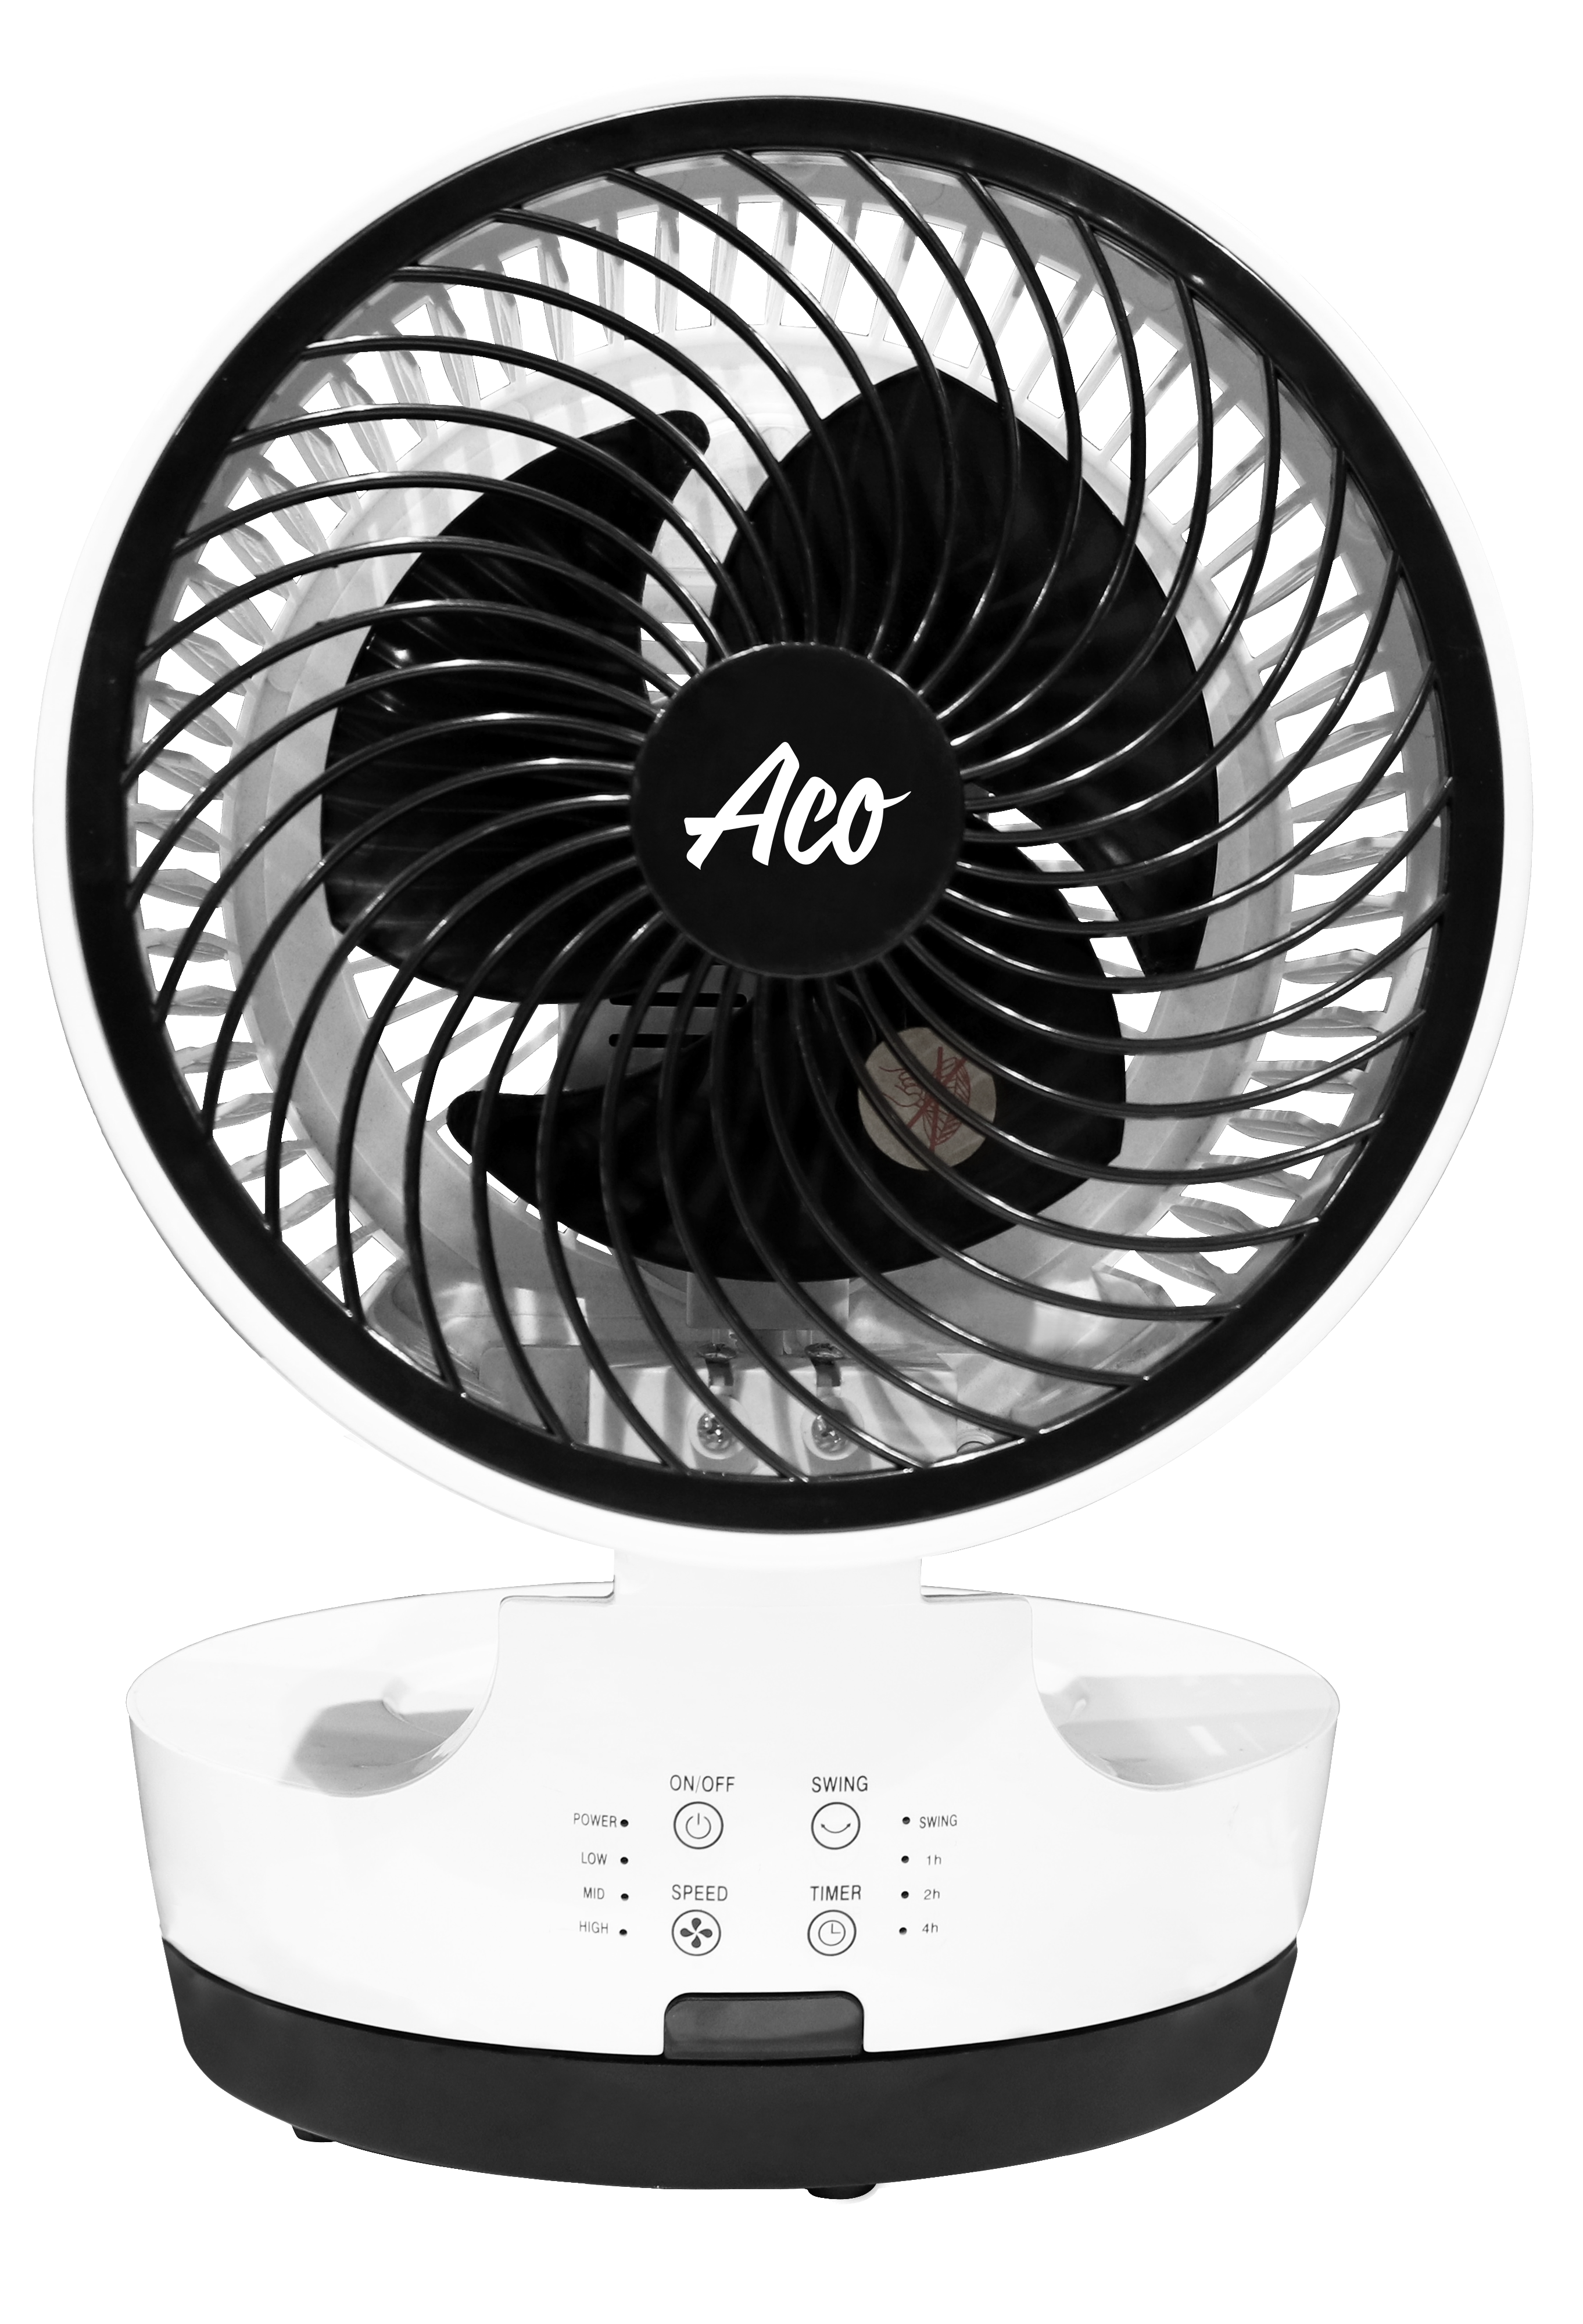 Aco circulation fan 